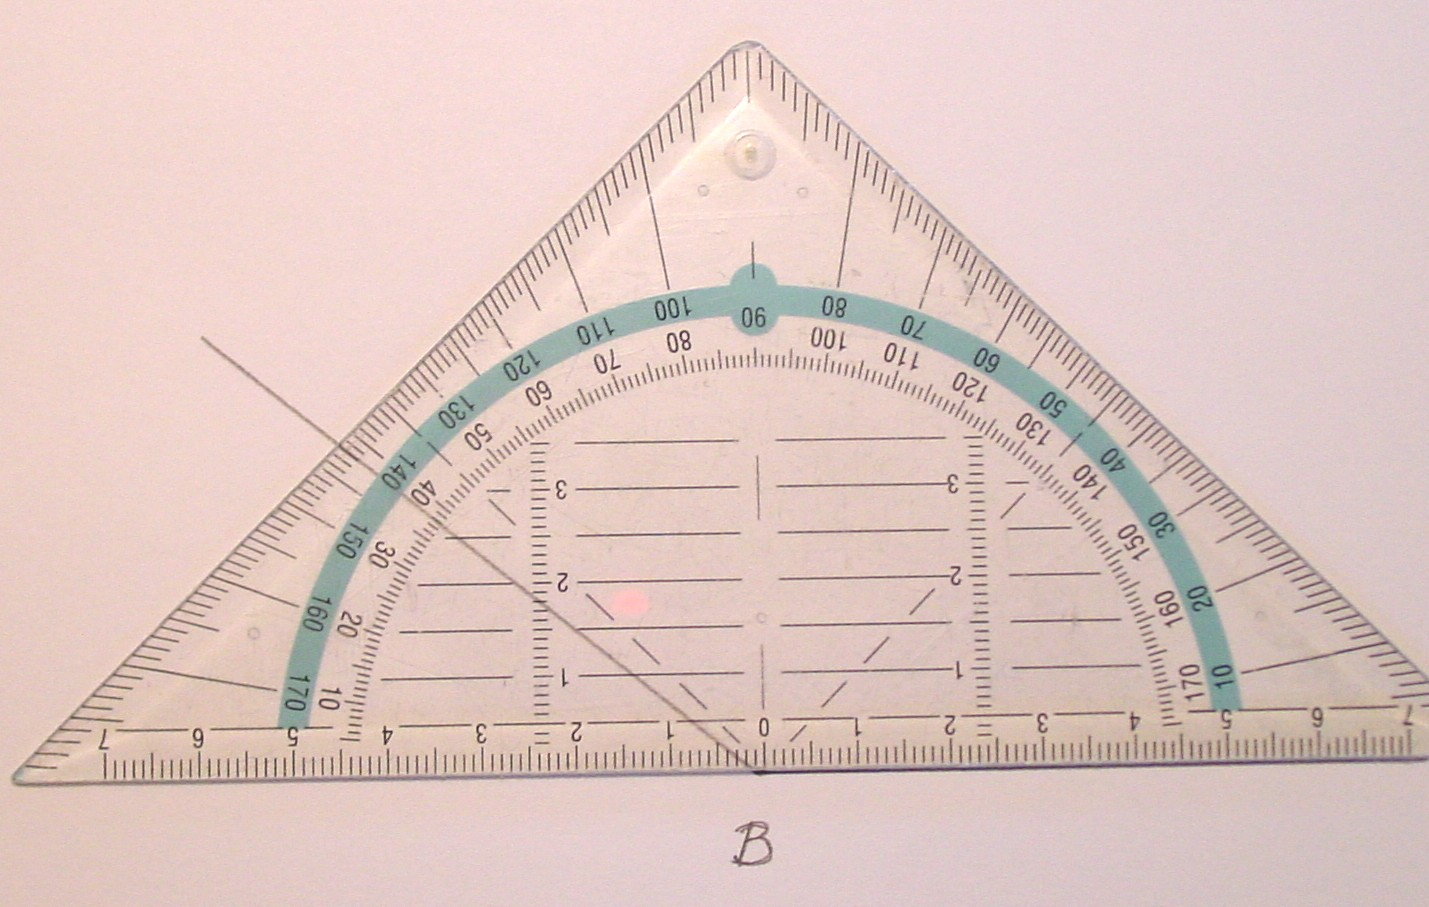 Welke hoek is stomp? Wrom kn een driehoek geen twee stompe hoeken heen? Sht eerst de grootte vn de stompe hoek en meet hem vervolgens in grden nuwkeurig. file: Imges/Me2204.